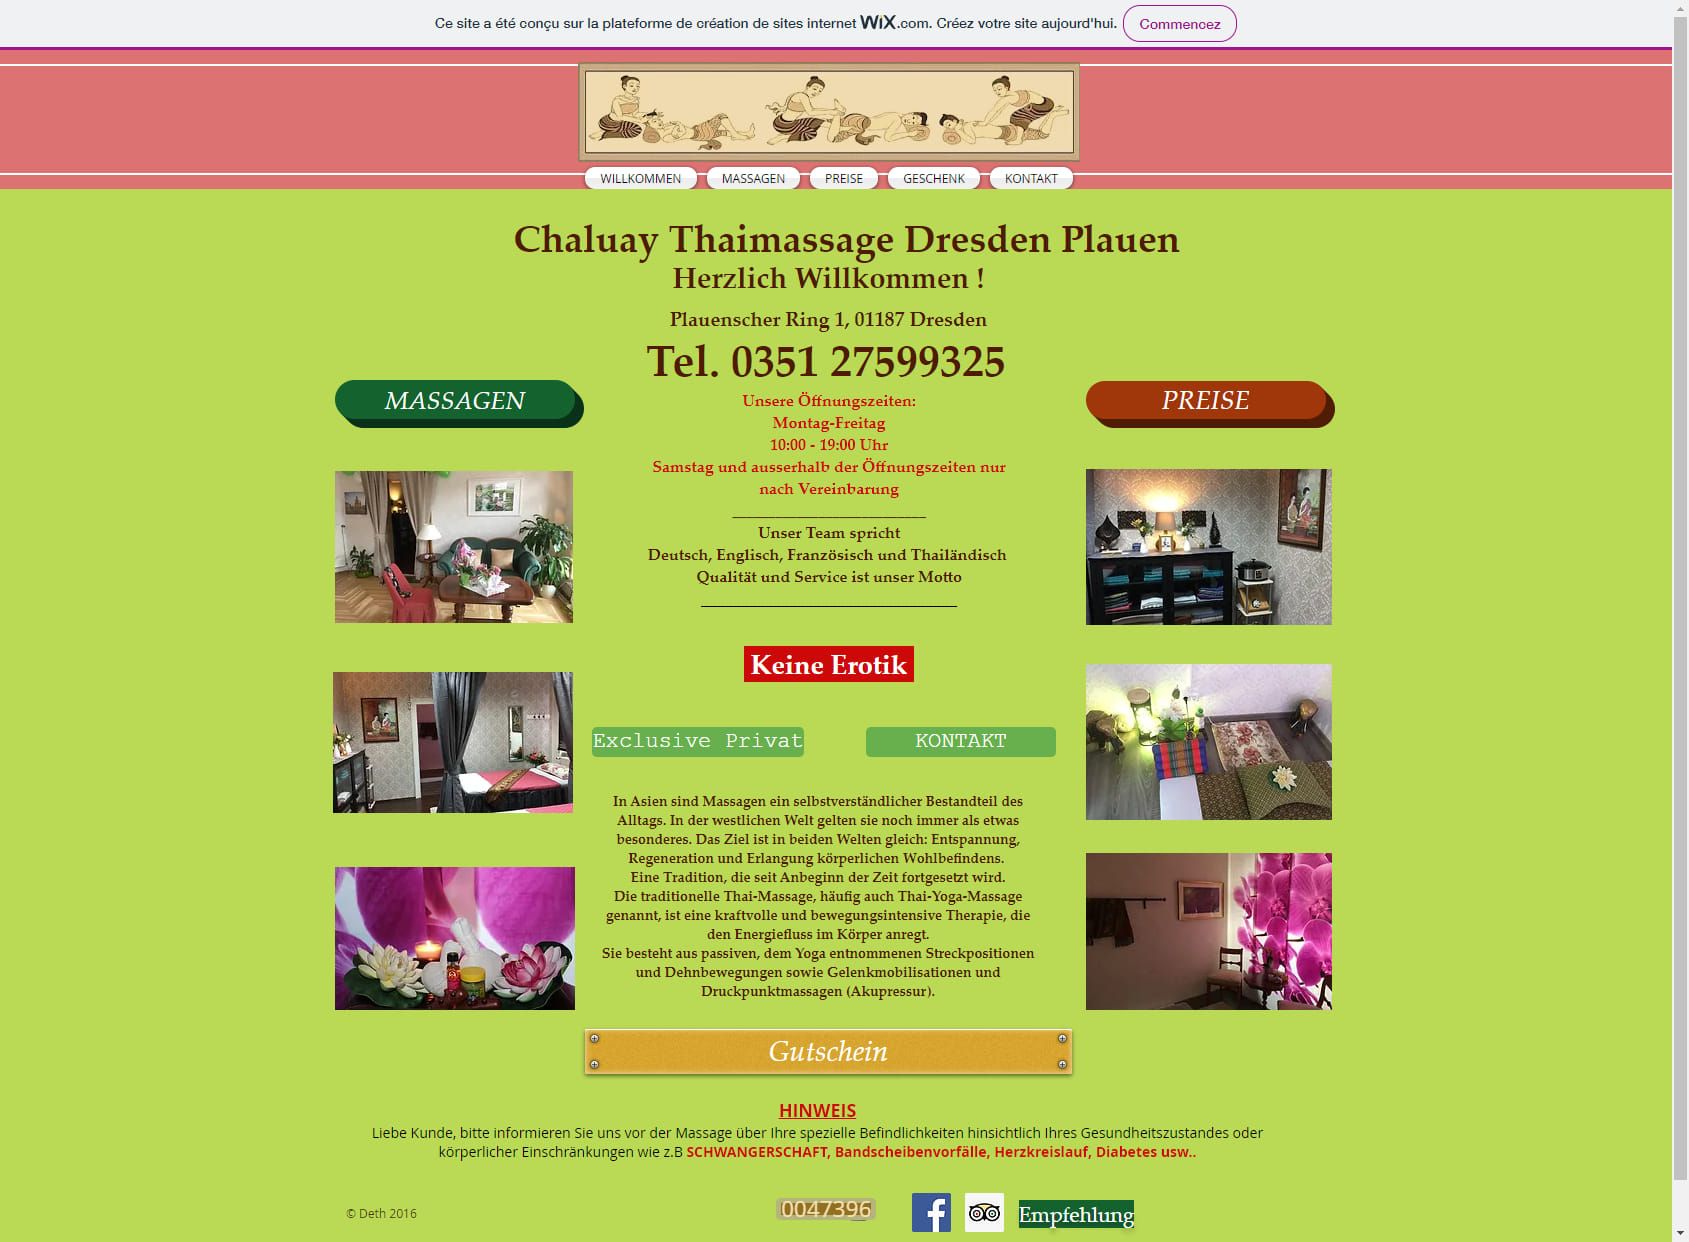 Chaluay Thai Massage dresden plauen